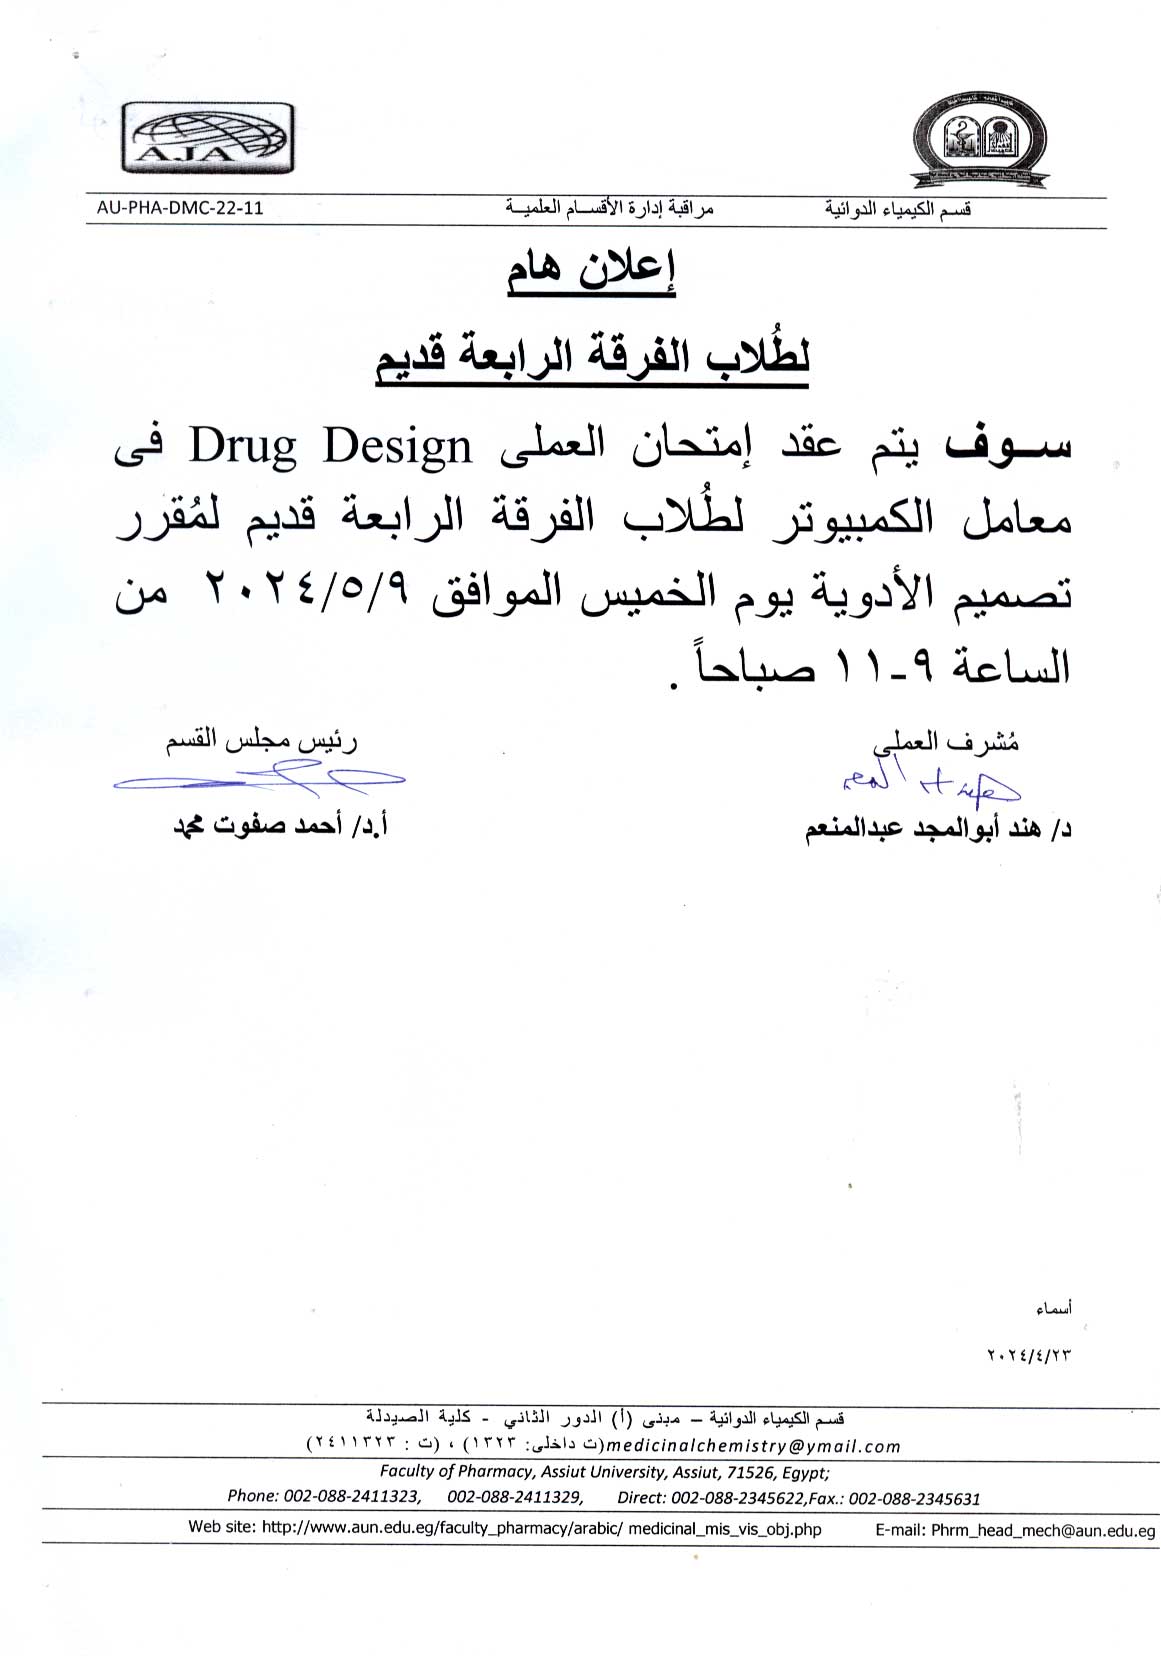 اعلان لطلاب الفرقة الرابعة القديم سوف يتم مراجعة العملي  لمقرر تصميم الأدوية